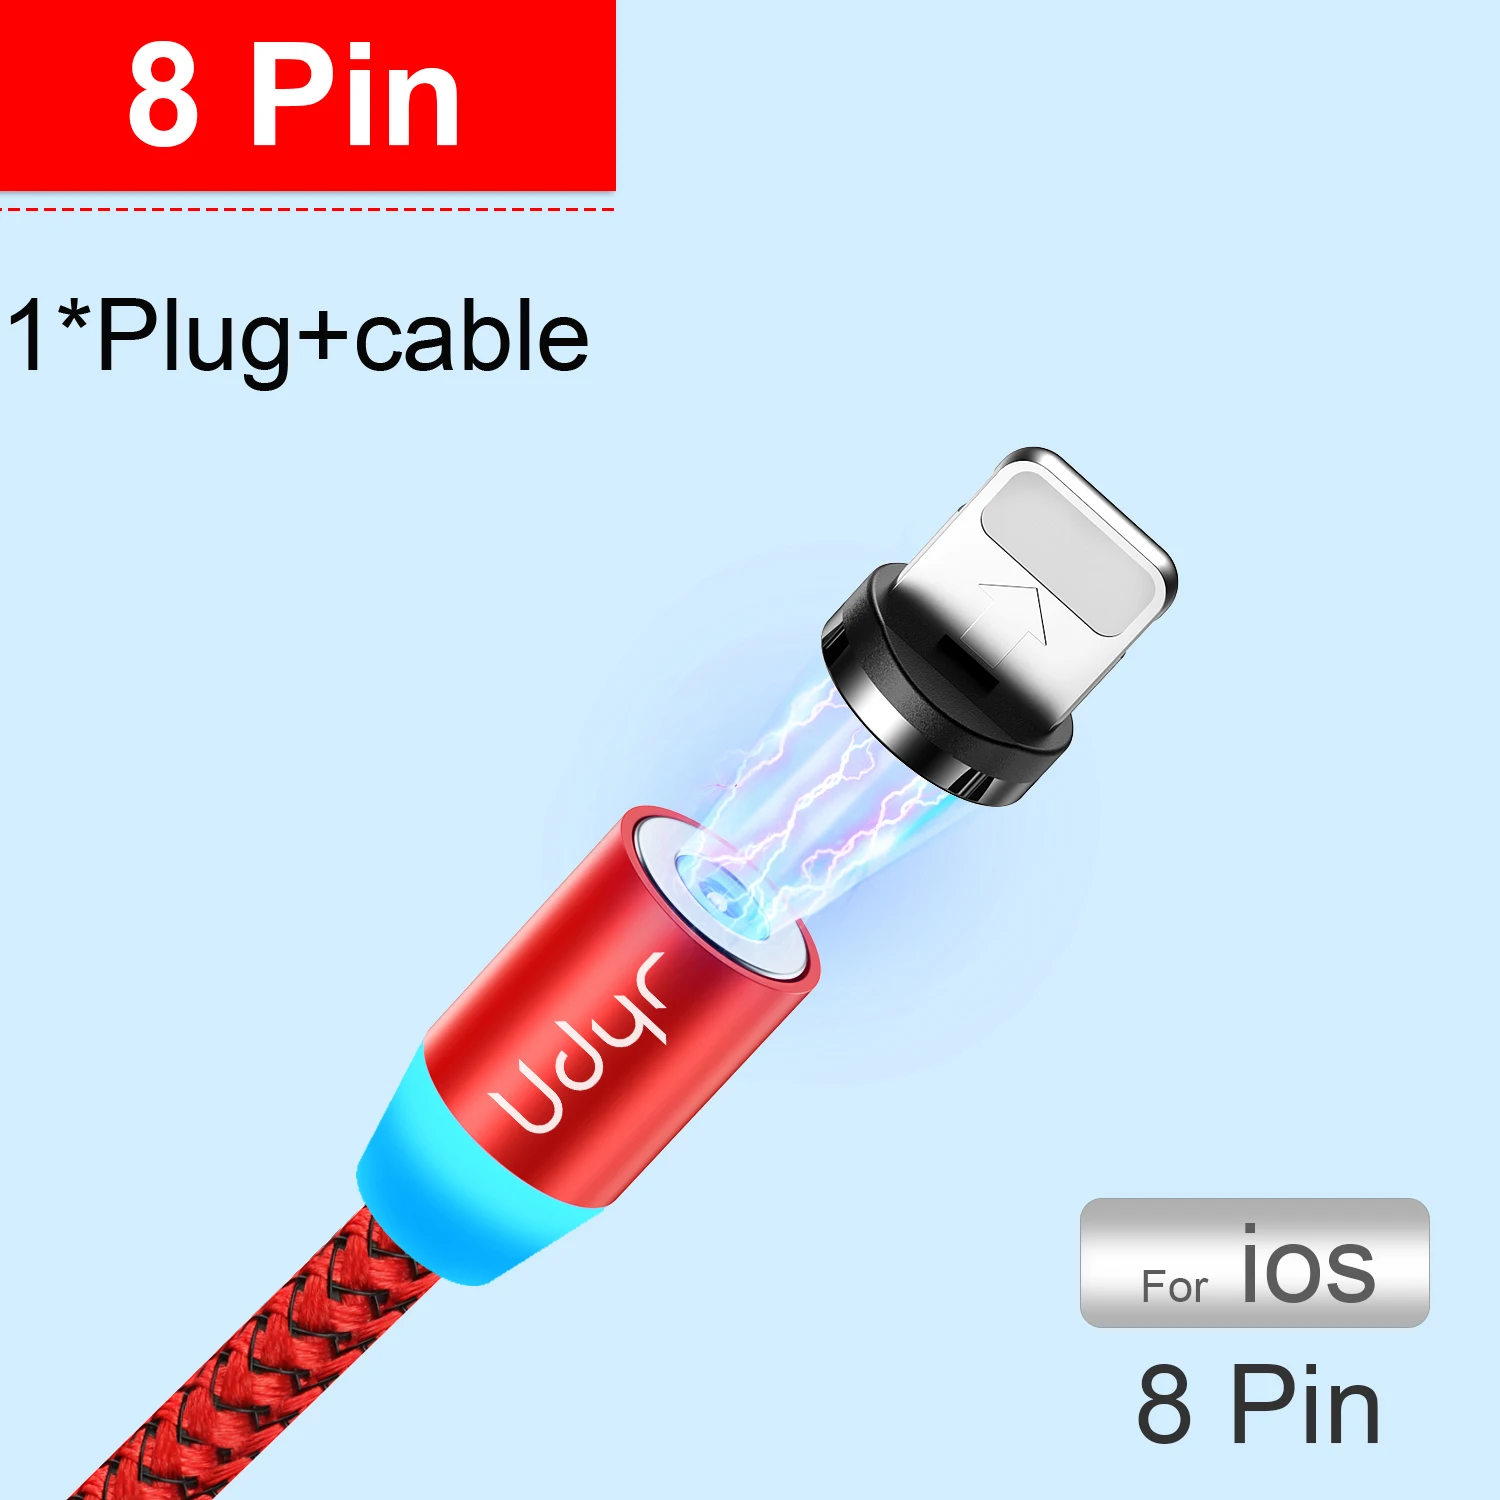 Udyr Магнитный Micro usb type C кабель для iPhone Xiaomi Android мобильный телефон Быстрая зарядка USB кабель магнит зарядное устройство провод шнур - Цвет: for iphone red